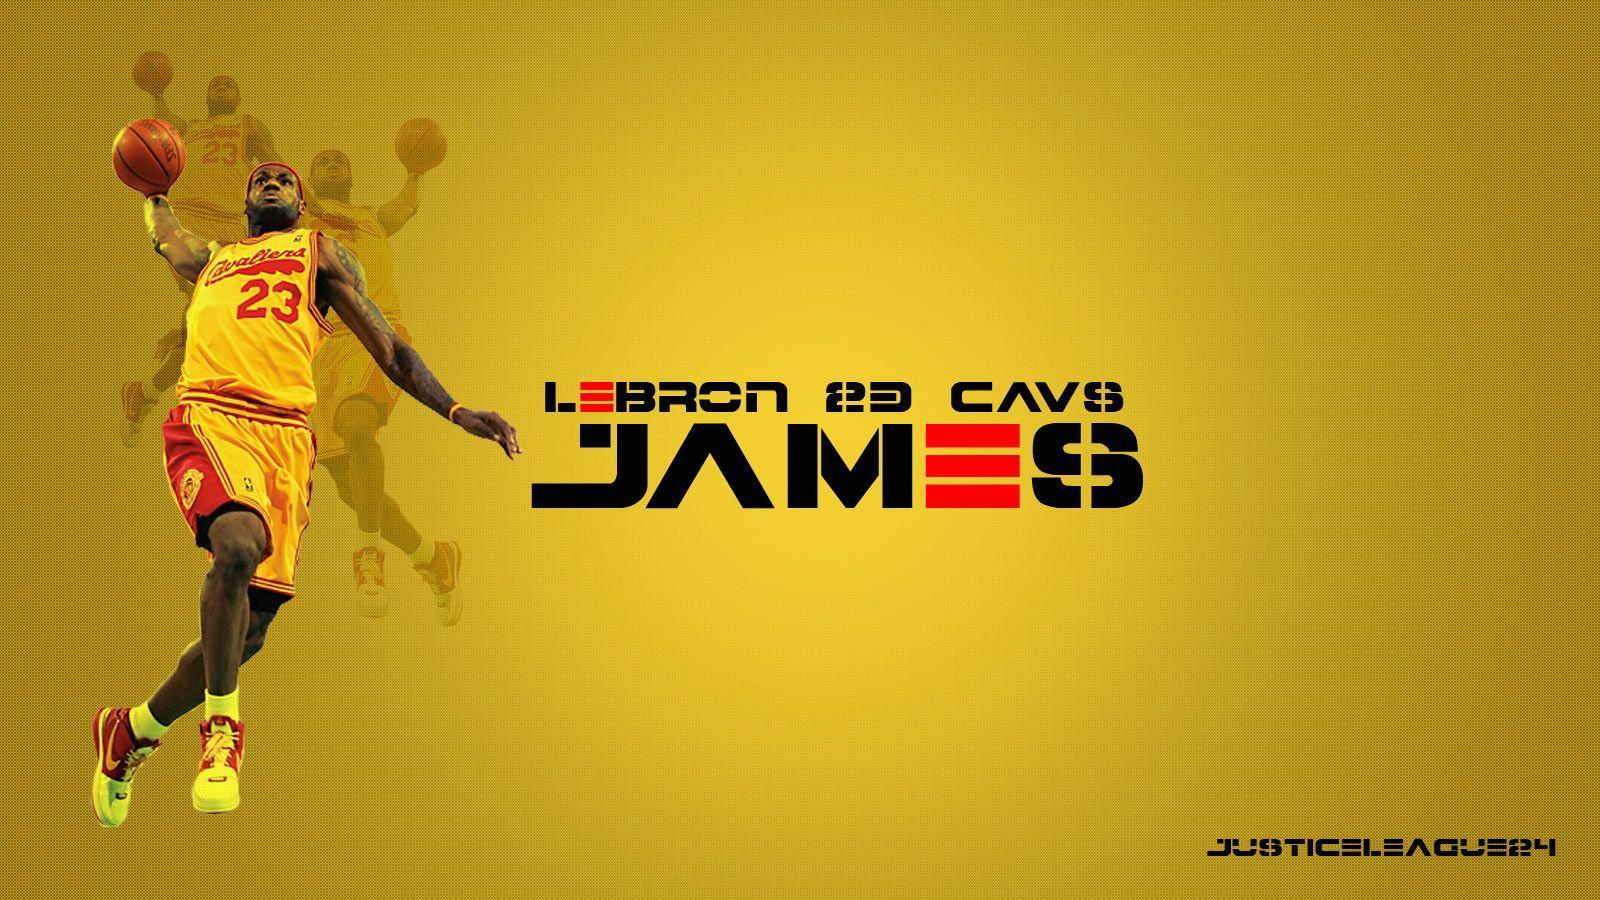 LeBron James 1600×900 Cavs Wallpaper. Basketball Wallpaper at